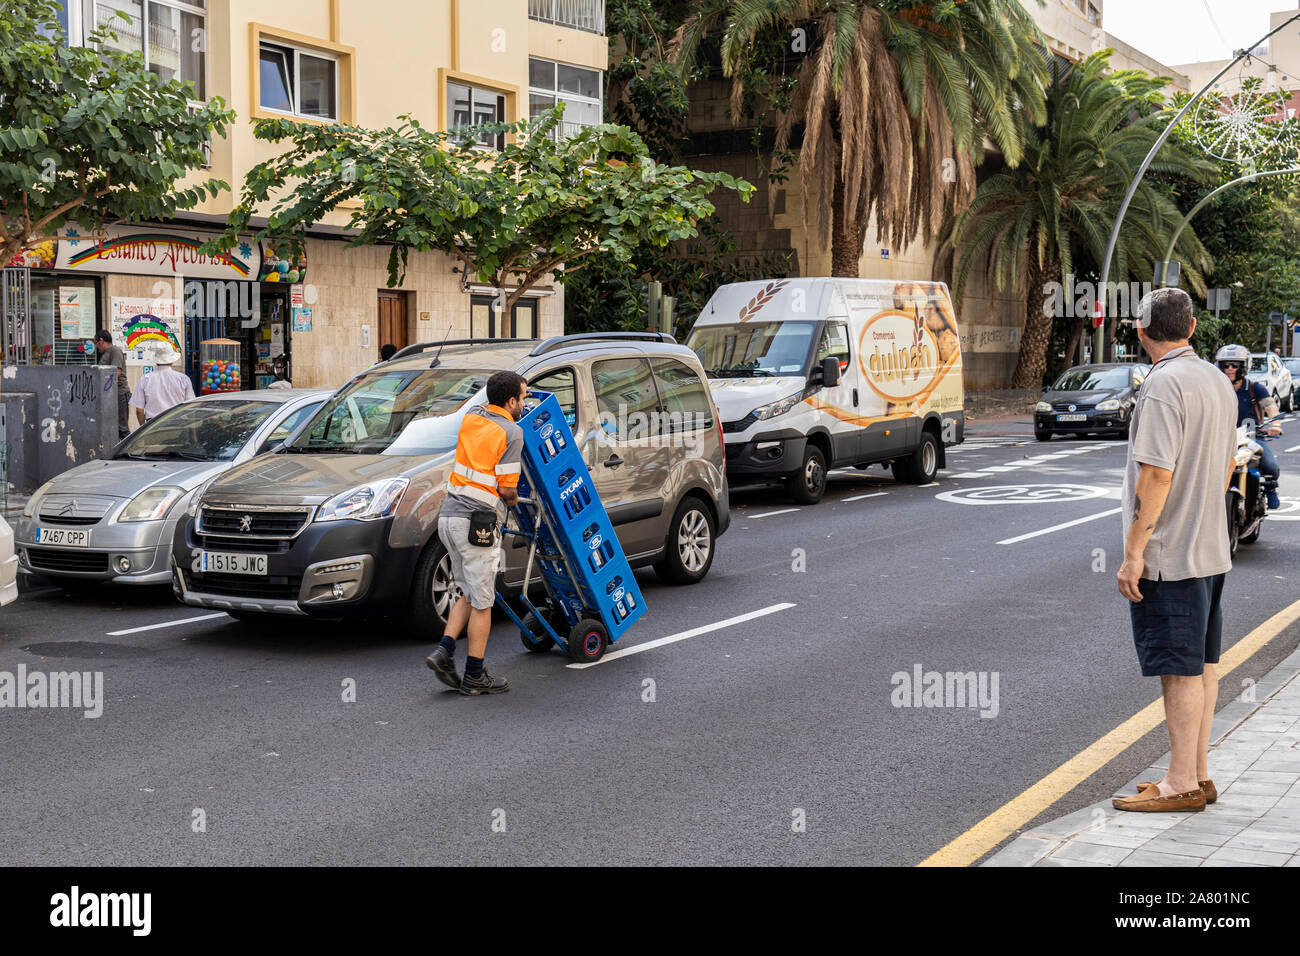 Livraison d'eau embouteillée man pushing trolley chargé avec des caisses sur une rue de Santa Cruz de Tenerife, Canaries, Espagne Banque D'Images